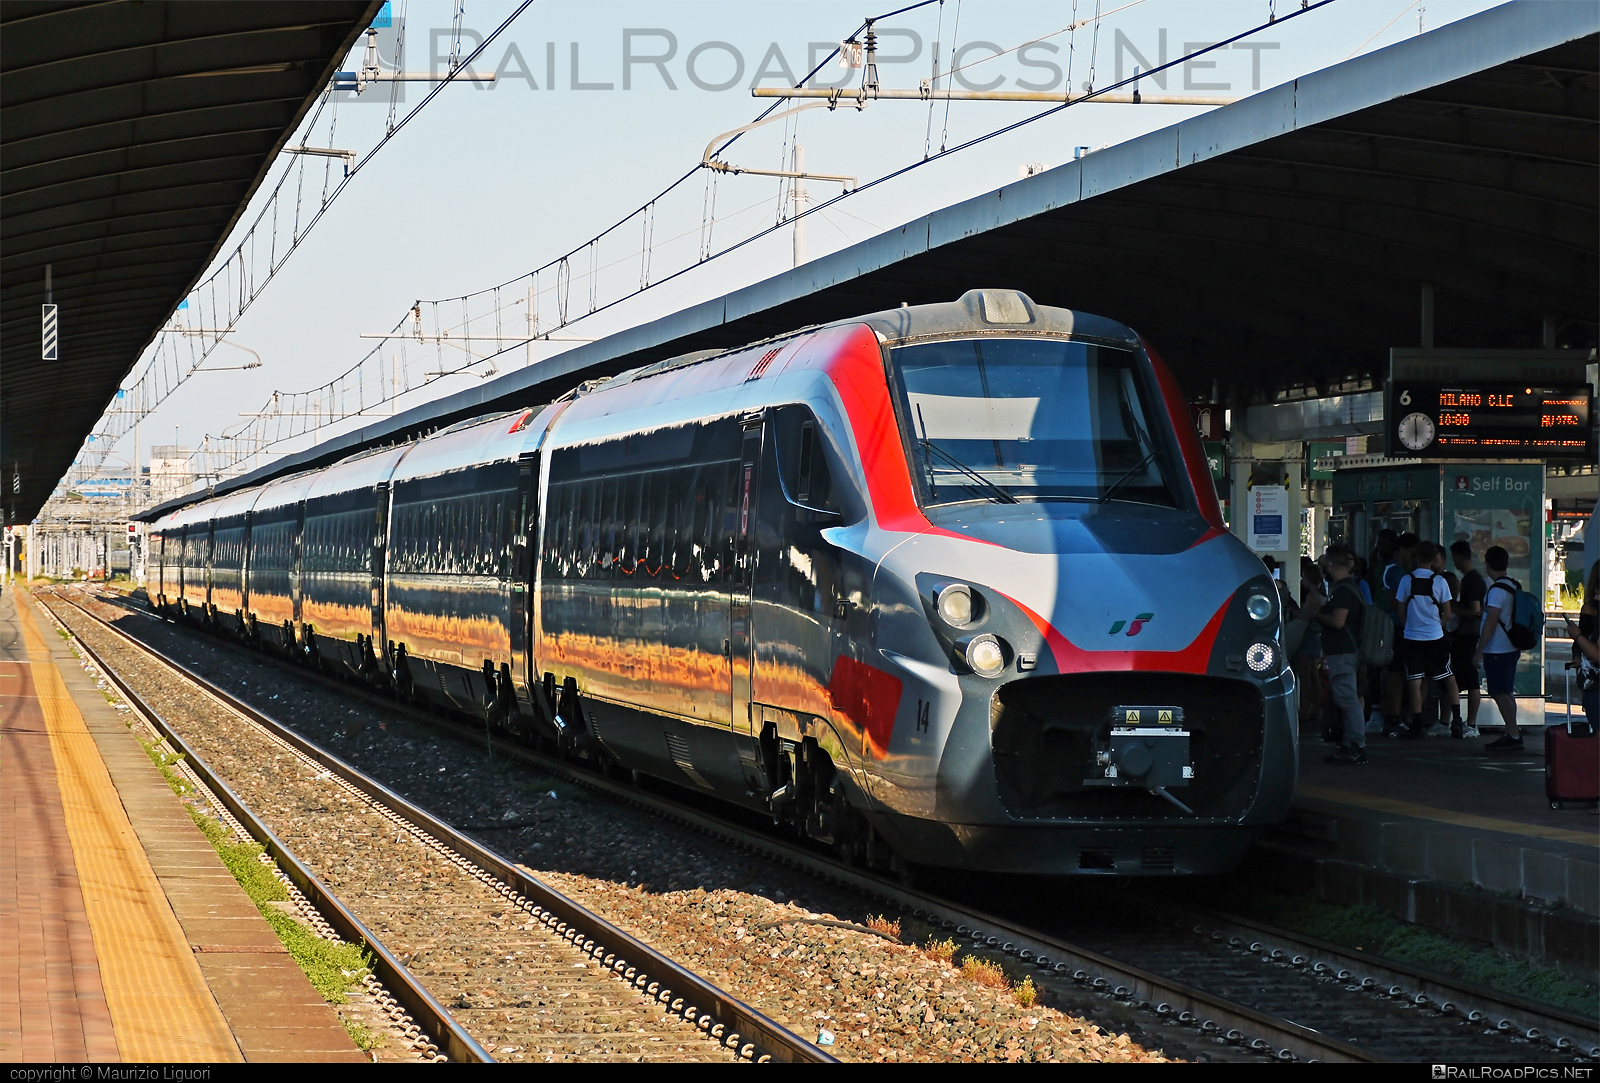 AnsaldoBreda ETR.700 - 4814 operated by Trenitalia S.p.A. #ansaldoBreda #ansaldoBredaEtr700 #etr700 #ferroviedellostato #frecciargento #fs #fsitaliane #lefrecce #trenitalia #trenitaliaspa